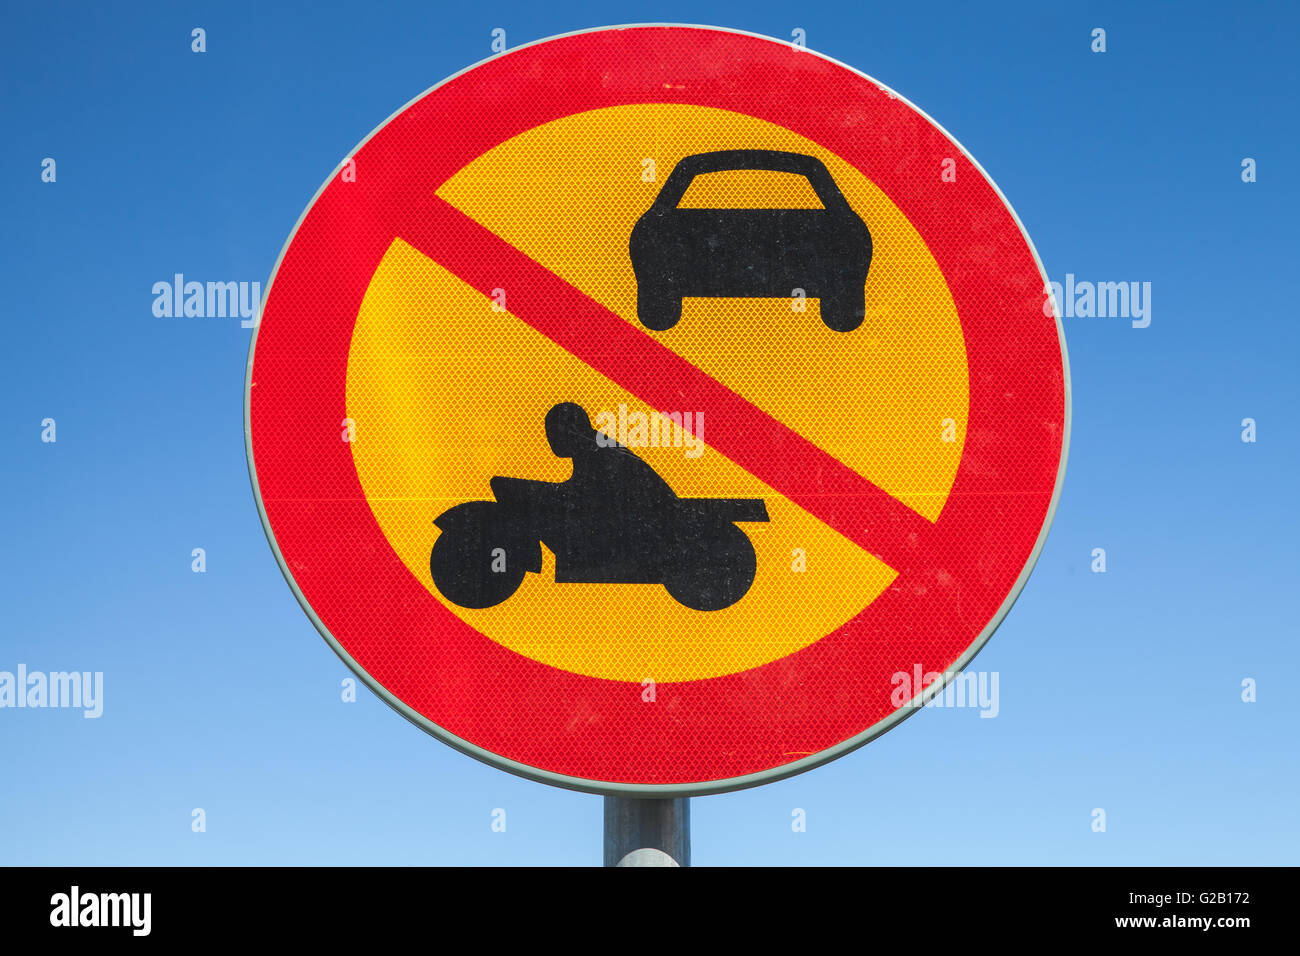 Rouge et jaune ronde européenne signe de la circulation plus de ciel bleu, le passage des véhicules et motos est interdite Banque D'Images